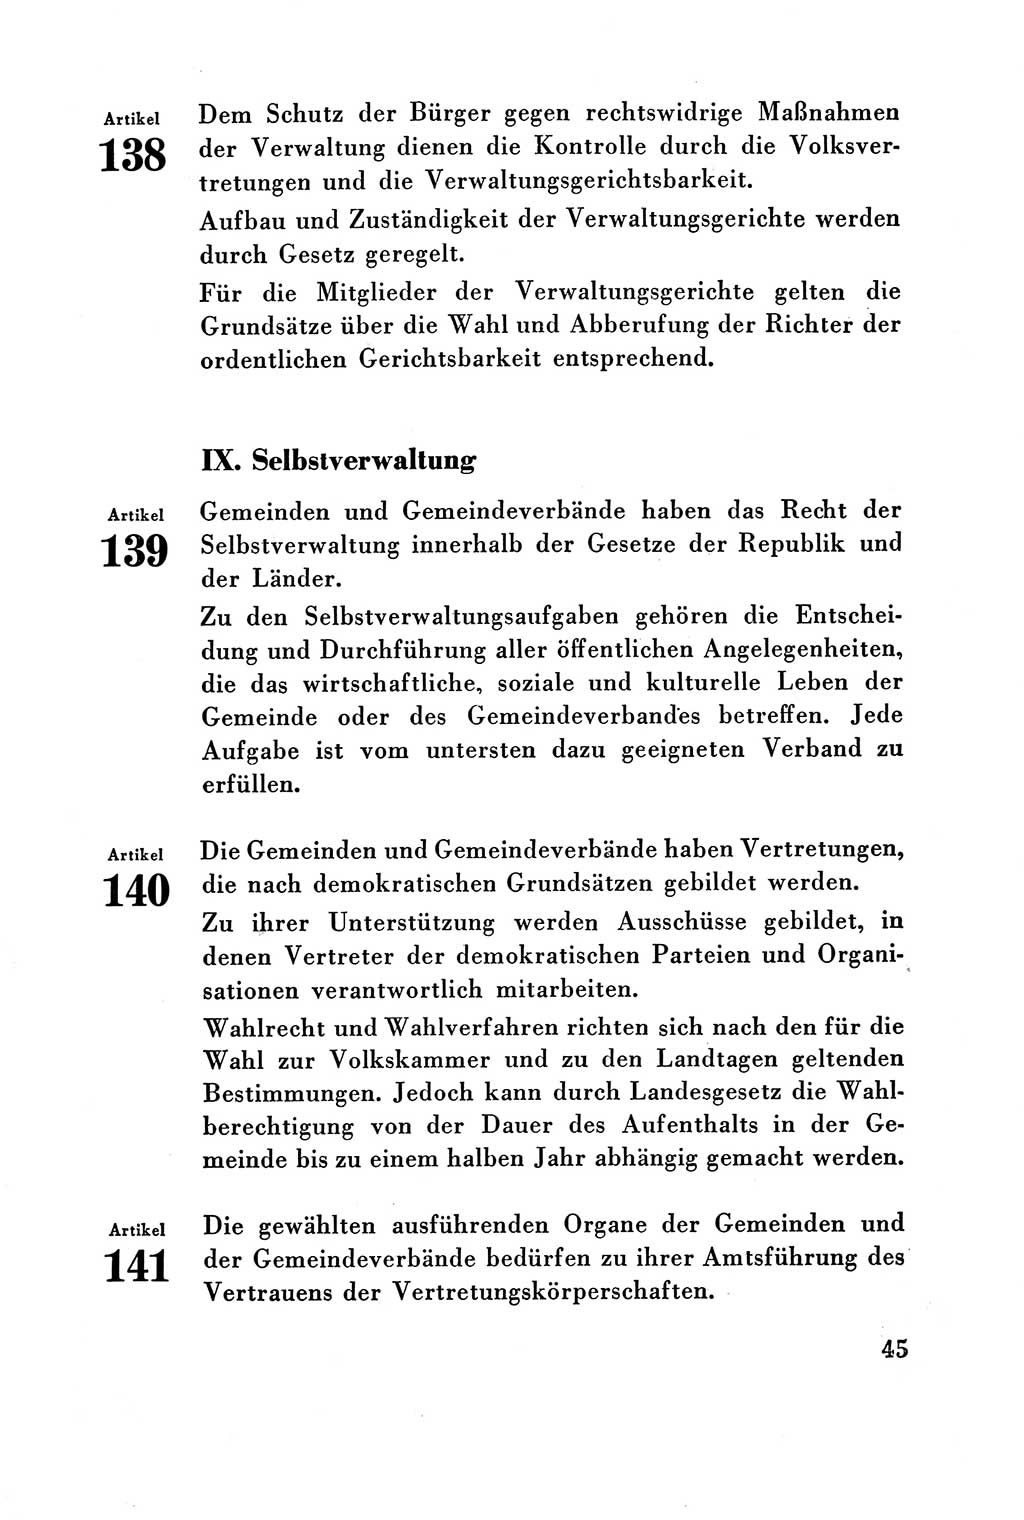 Verfassung der Deutschen Demokratischen Republik (DDR) vom 7. Oktober 1949, Seite 45 (Verf. DDR 1949, S. 45)